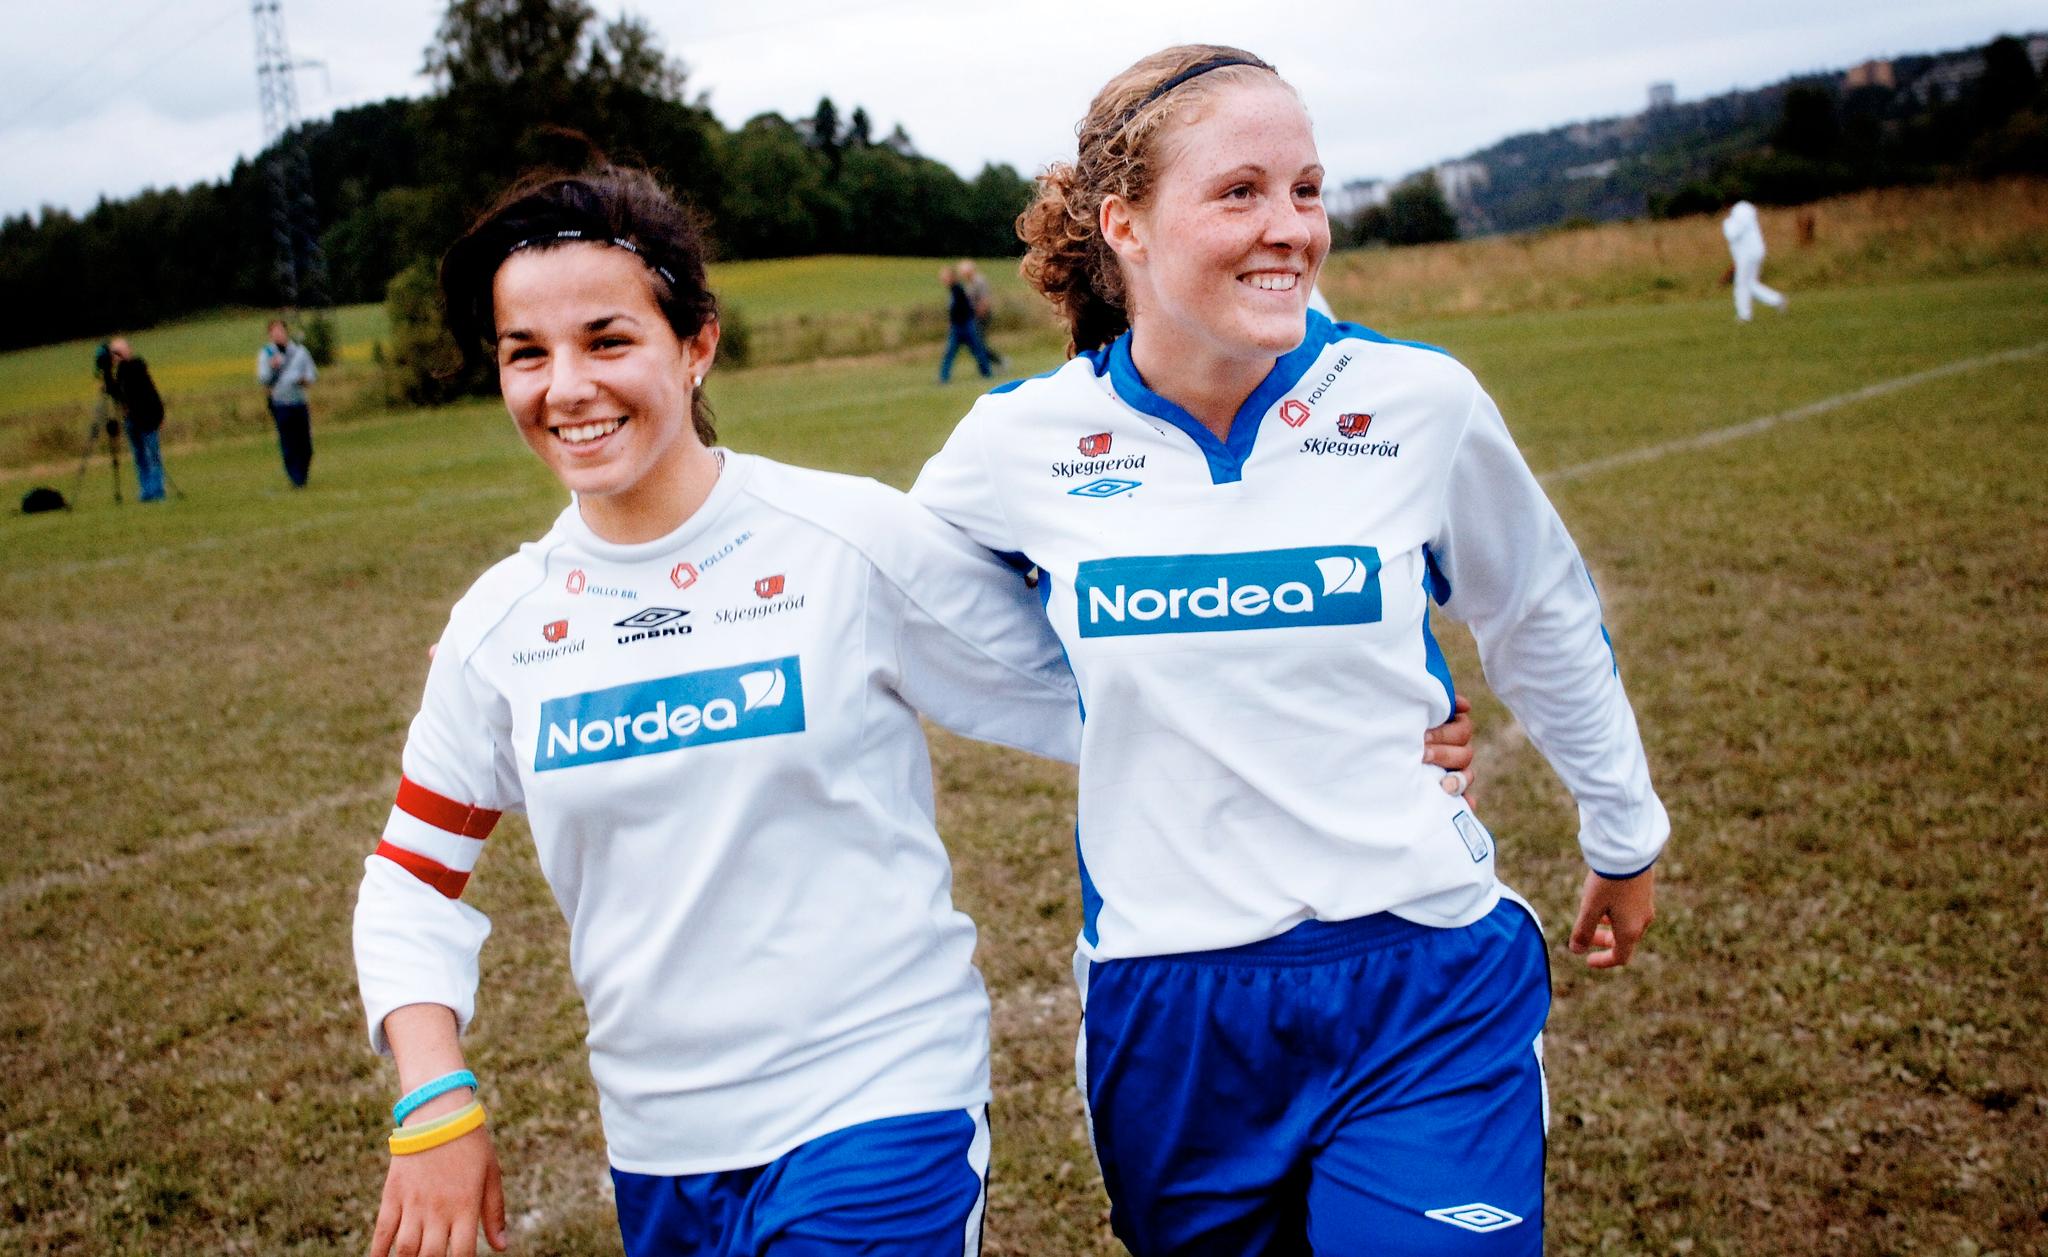 SPILTE FOTBALL: Zaineb Al-Samarai spilte fotball med Isabell Herlovsen i Kolbotn, her i 2005.